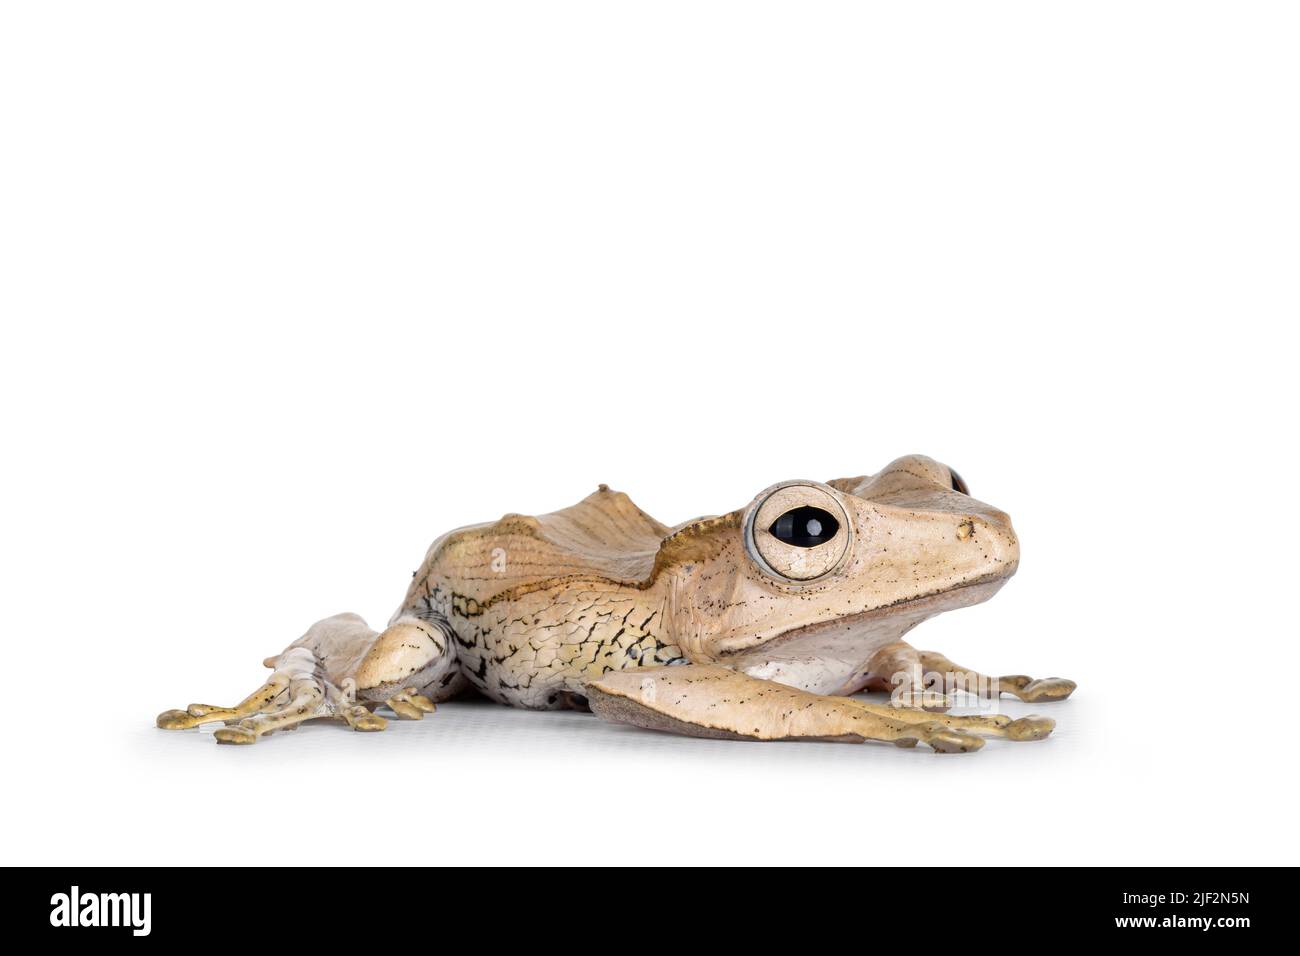 Close up of Borneo eared frog aka Polypedates otilophus laying flat side ways. Isolated on a white background. Stock Photo